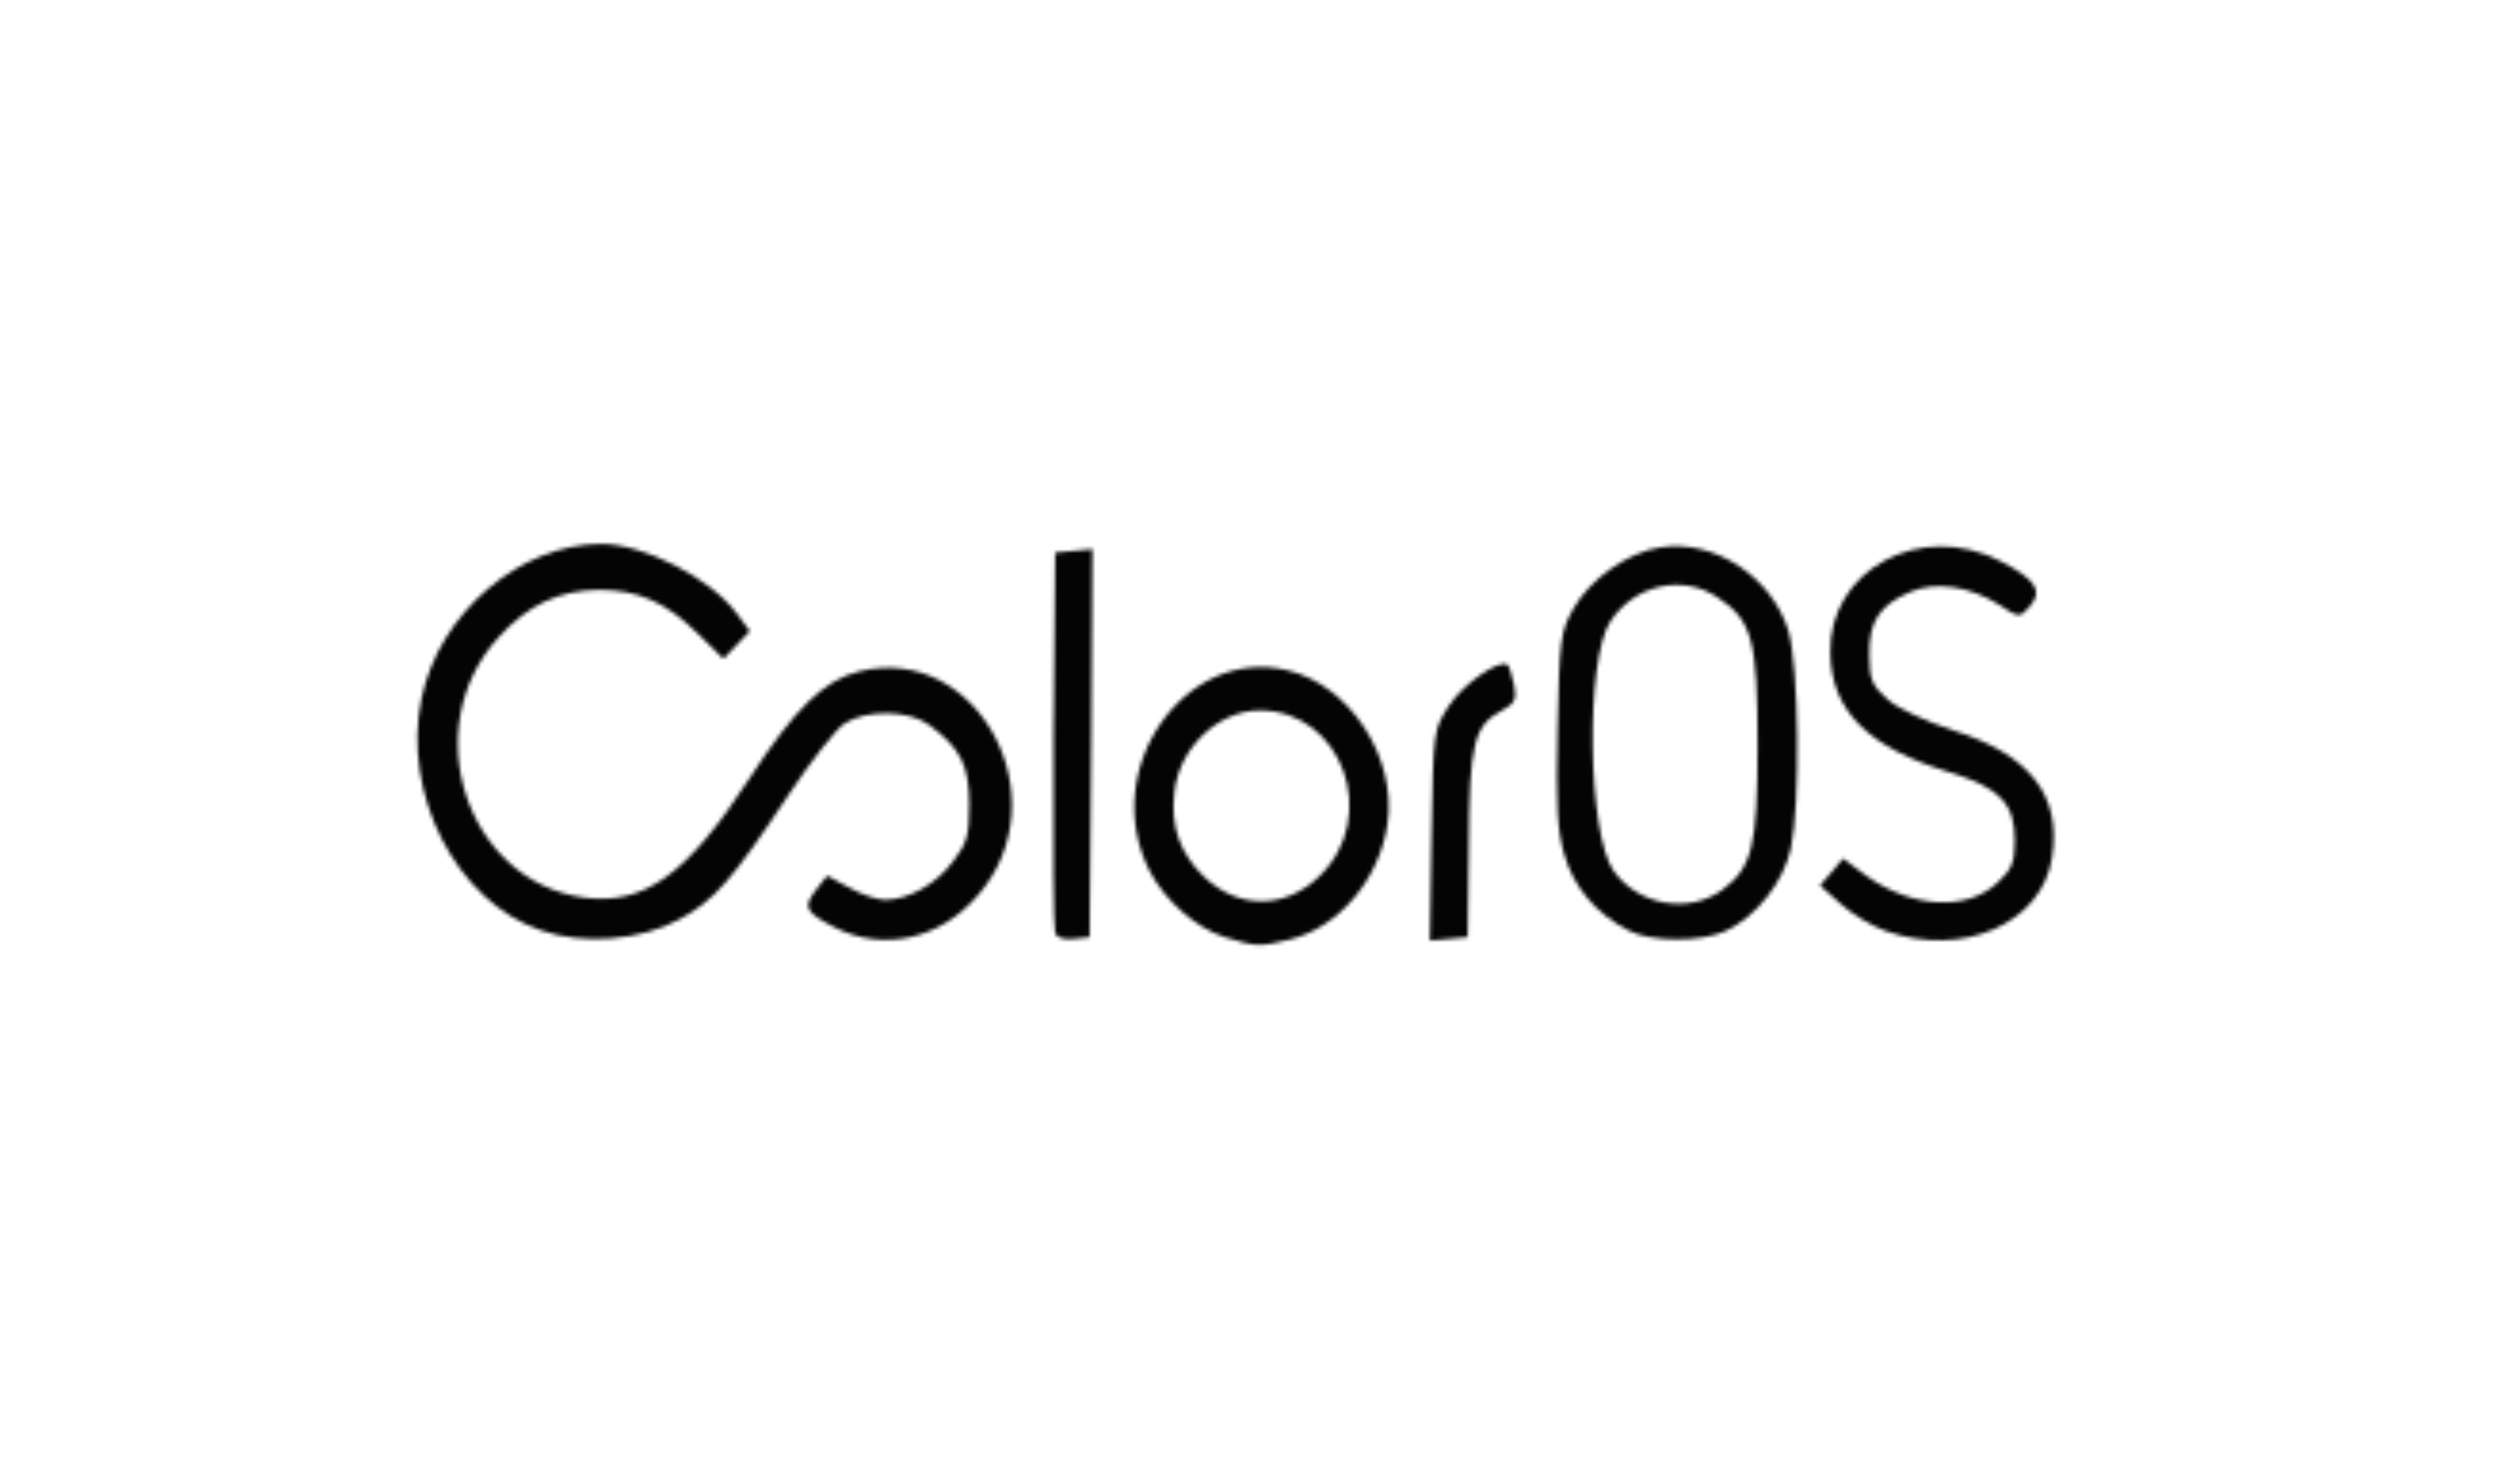 Logotipo de ColorOS destacado